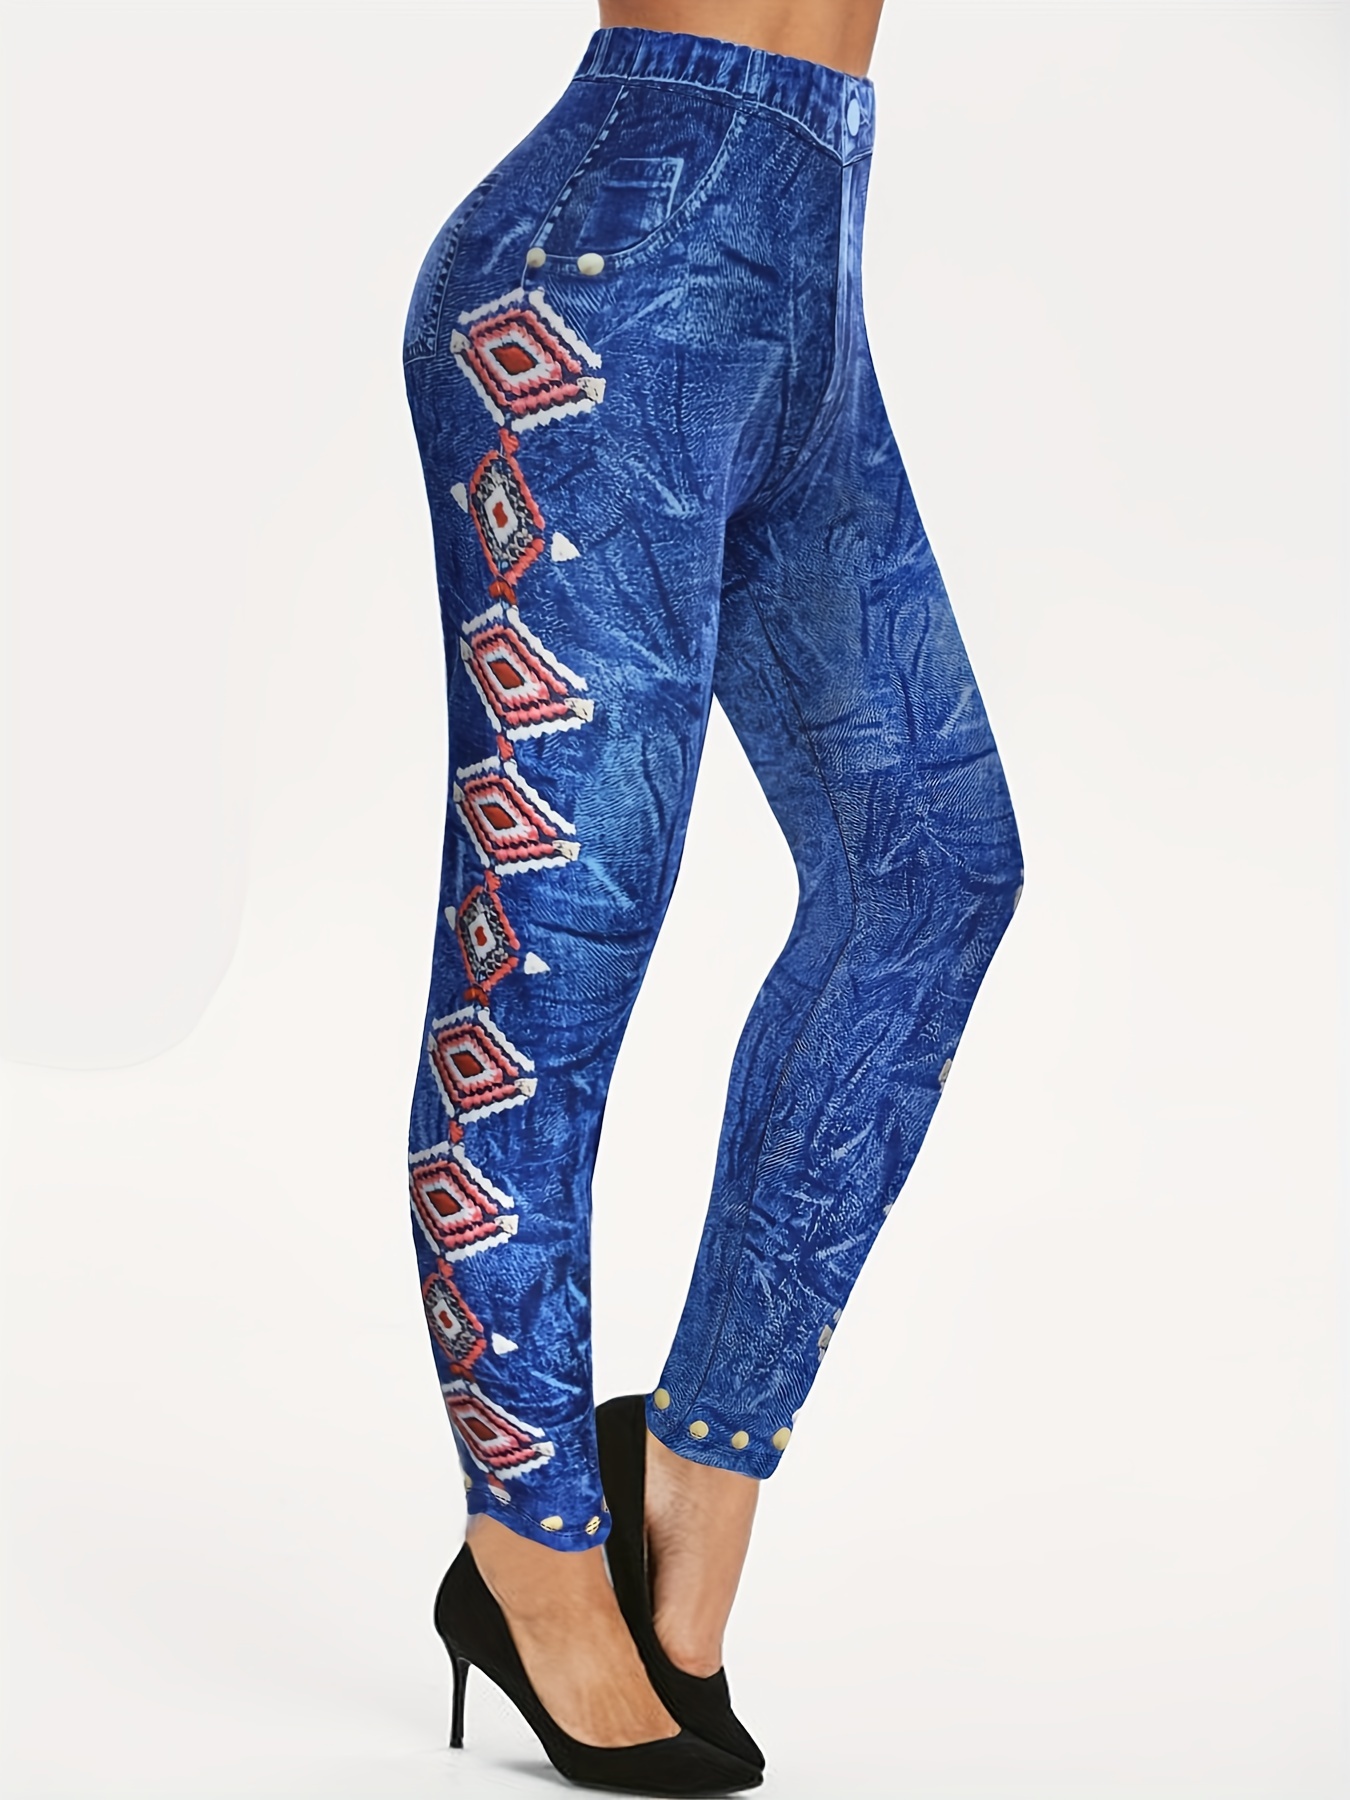 Boot Leggings Geometric All- Slim Women Long Casual Printed Pants